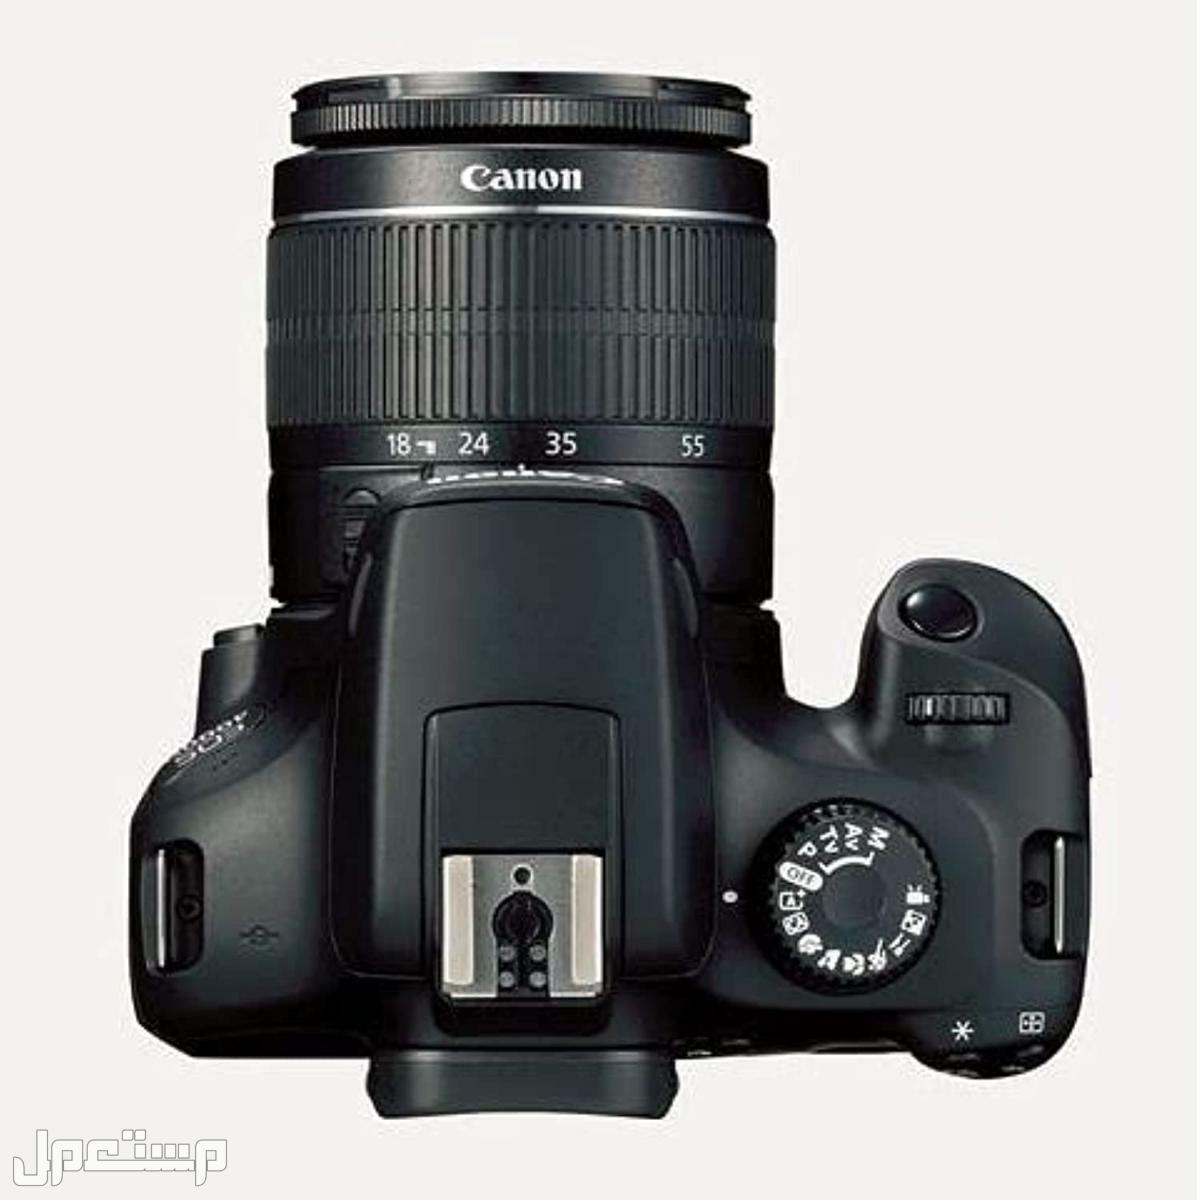 مواصفات وأهم مميزات وأسعار أرخص كاميرا تصوير من كانون في فلسطين كاميرا كانون  D 4000 بعدسة احادية